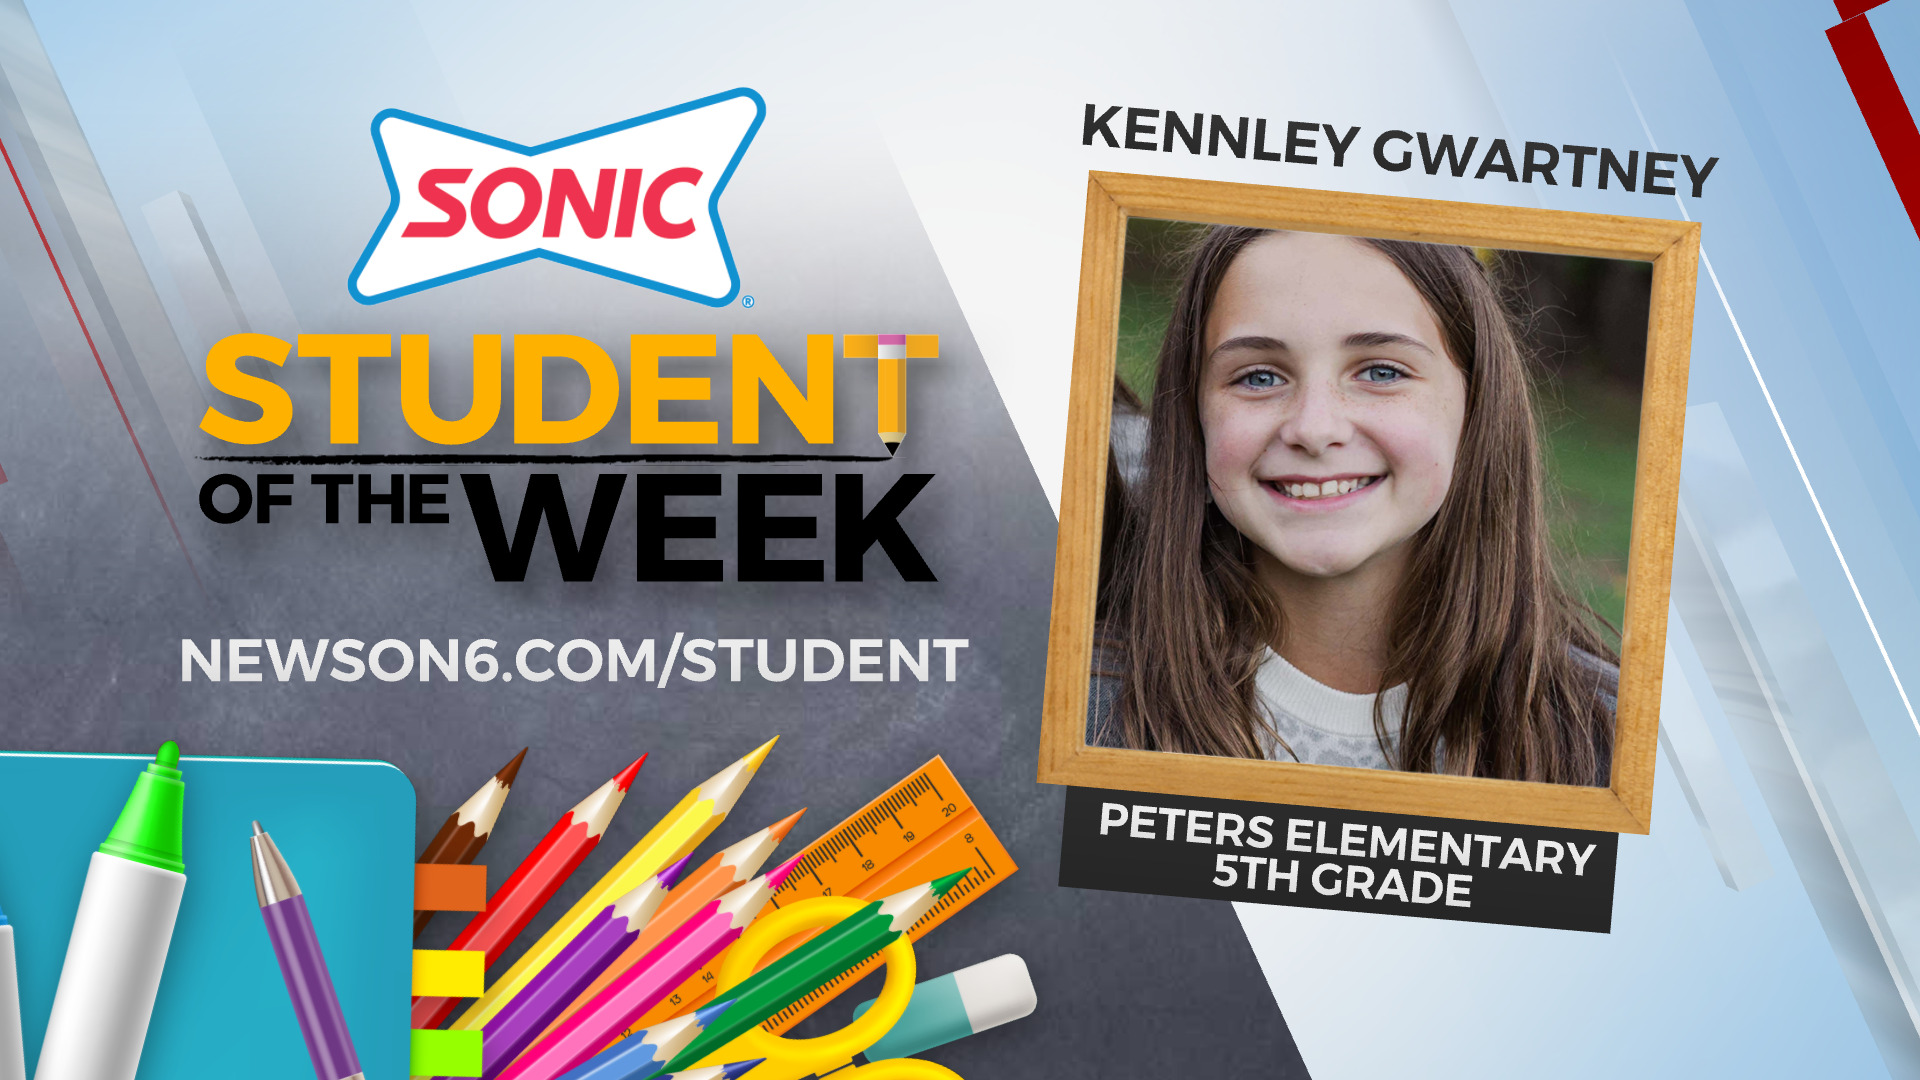 Student of the Week: Kennley Gwartney